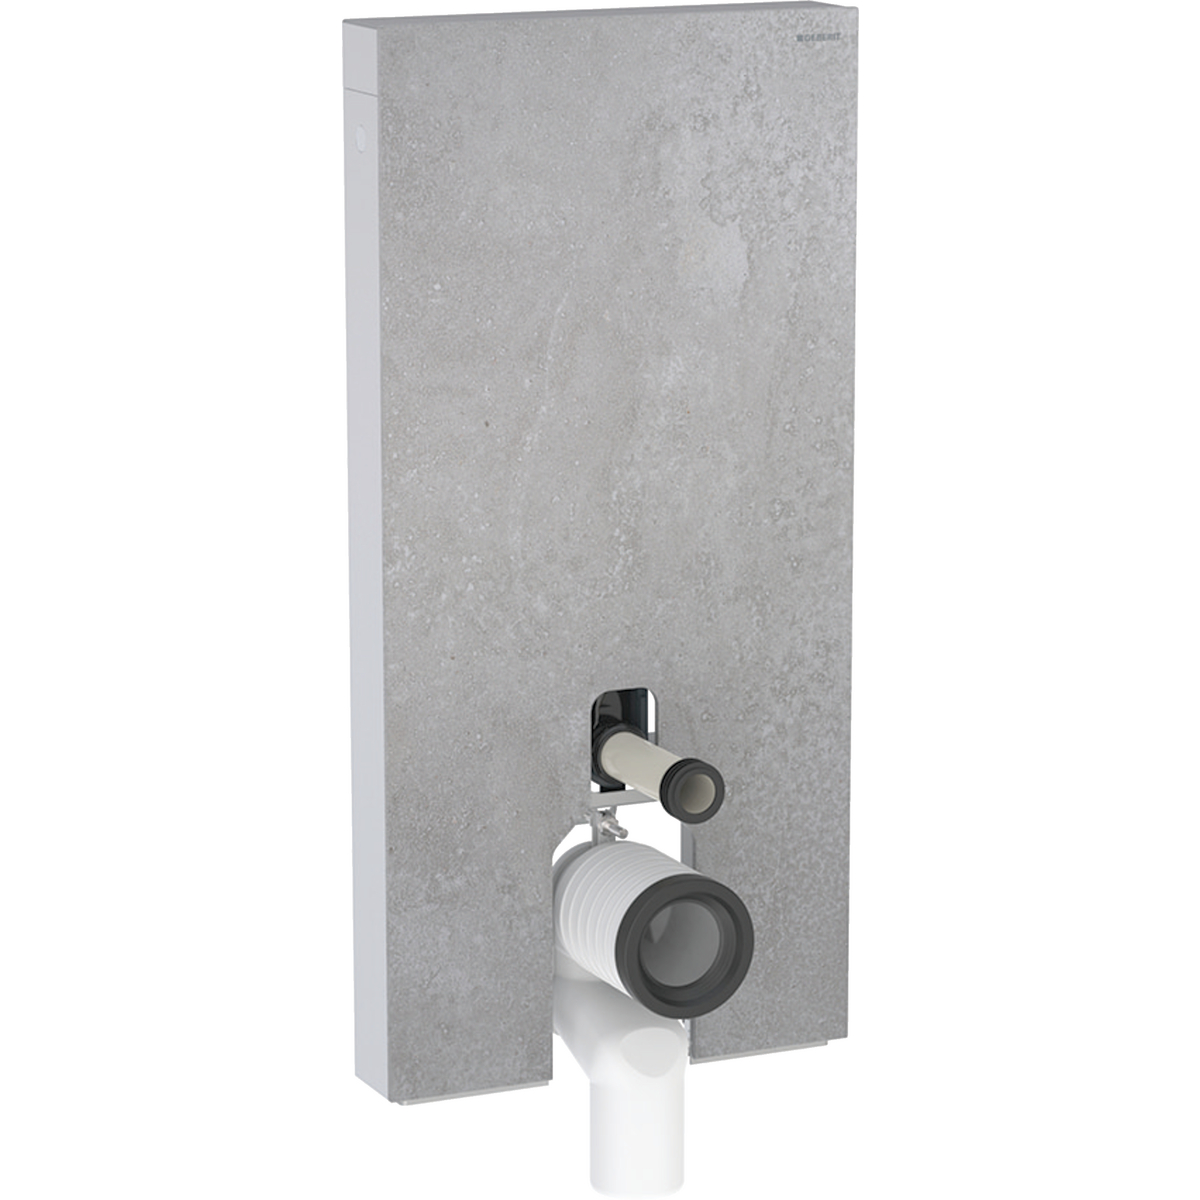 Monolith Sanitärmodul für Stand-WC, 101 cm, Frontverkleidung aus Steinzeug: Steinzeug Betonoptik, Aluminium